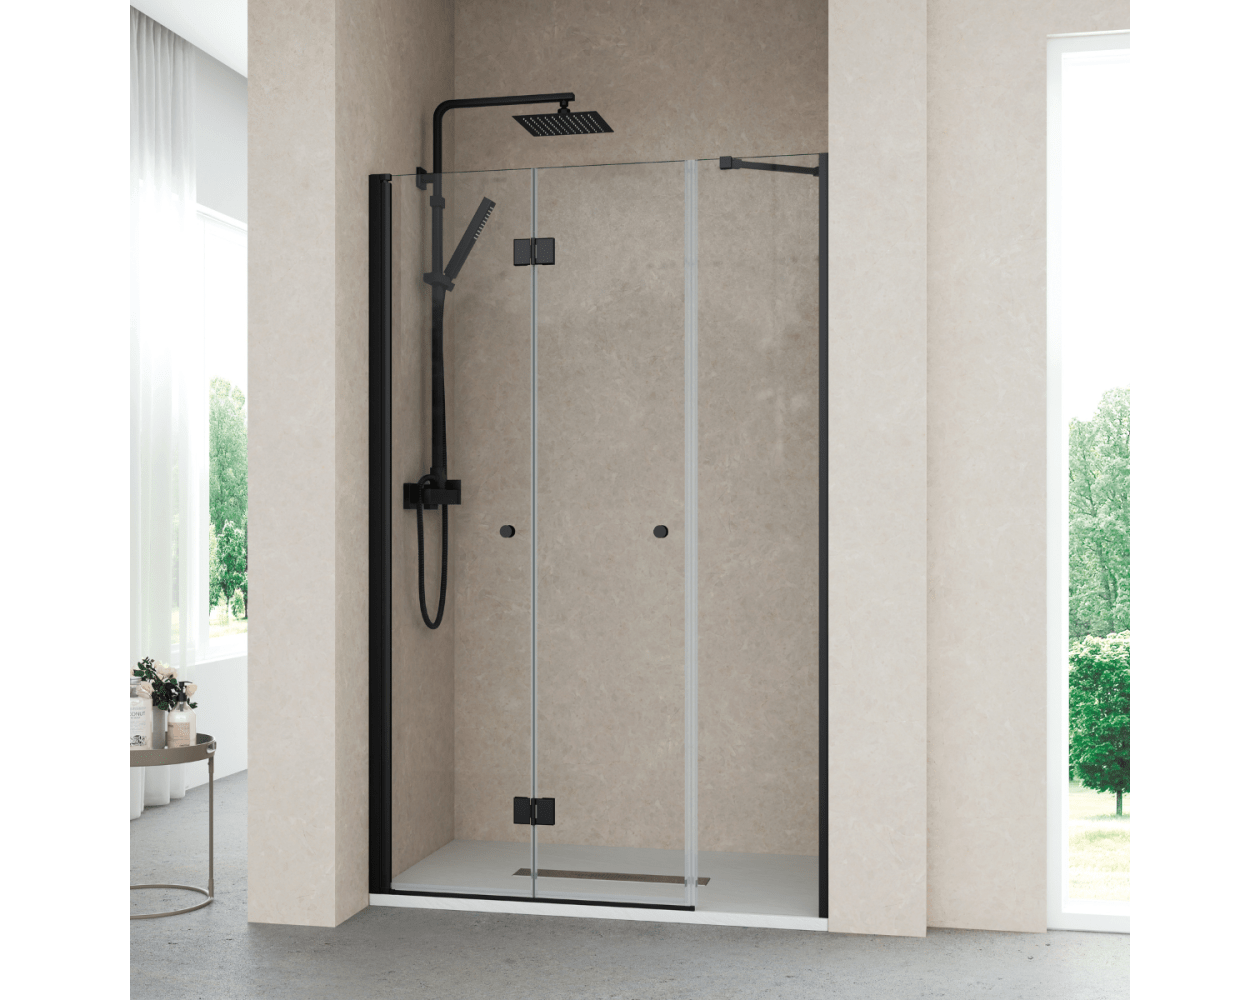 Mamparas de ducha Frontal Puertas Plegables a medida modelo OBI